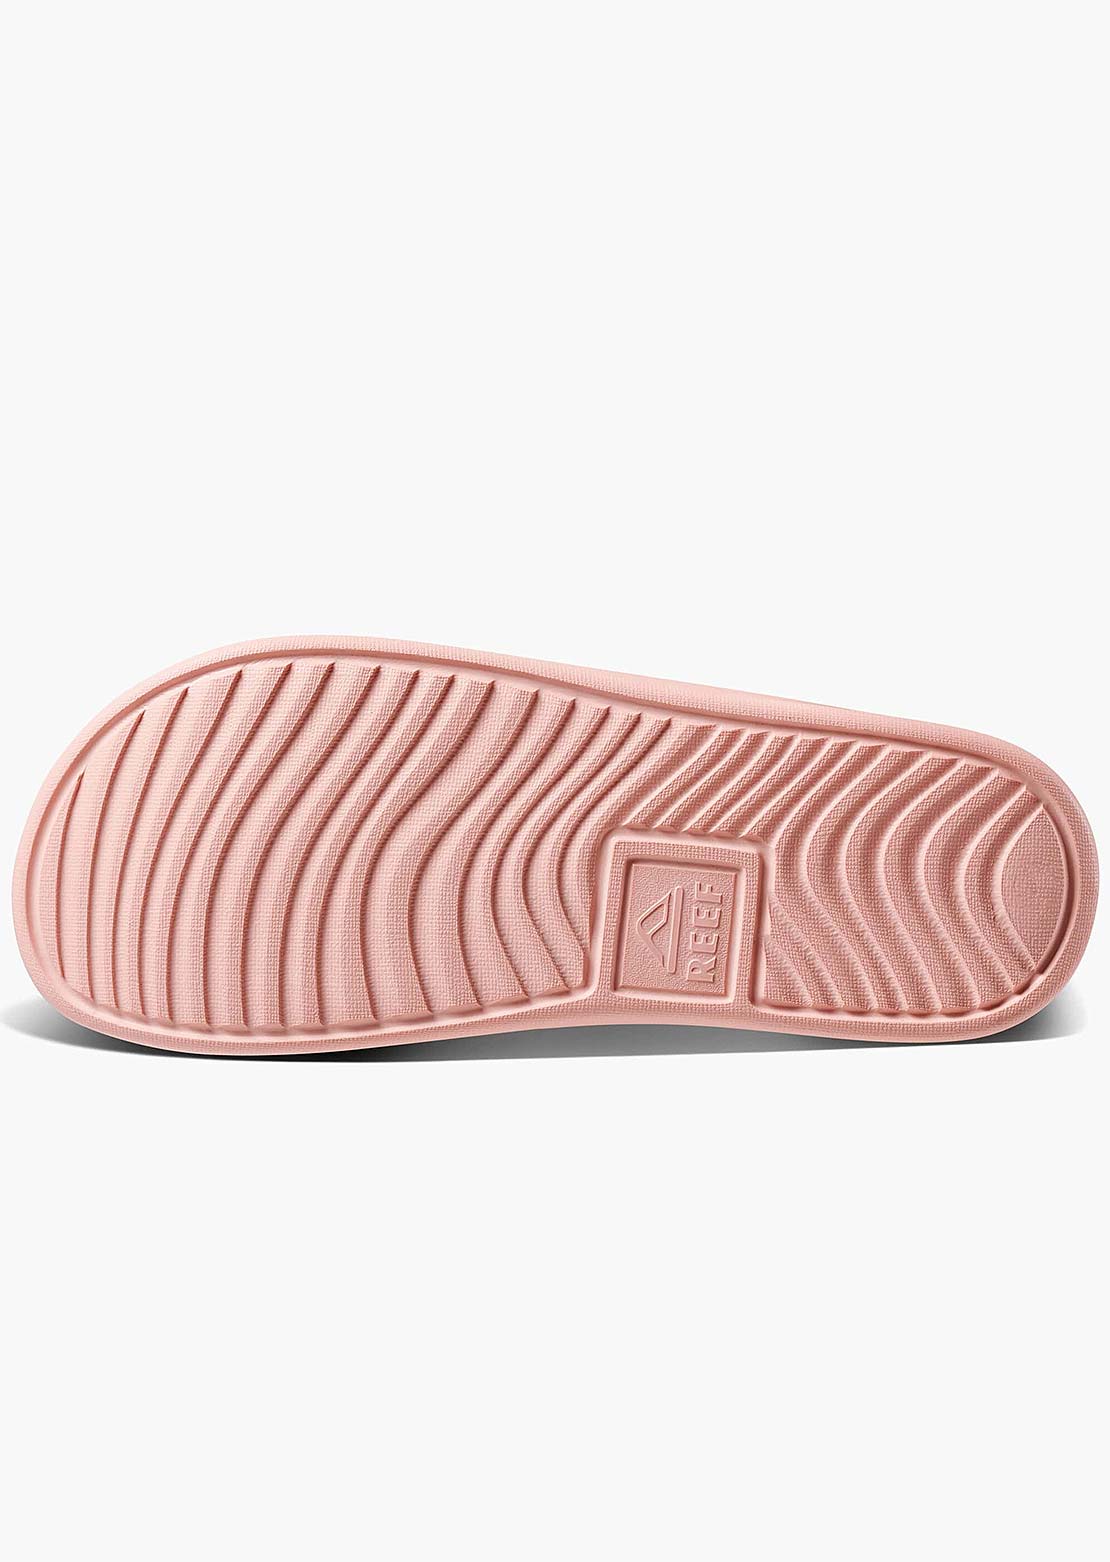 Reef Women&#39;s One Slide Sandals Peach Parfait